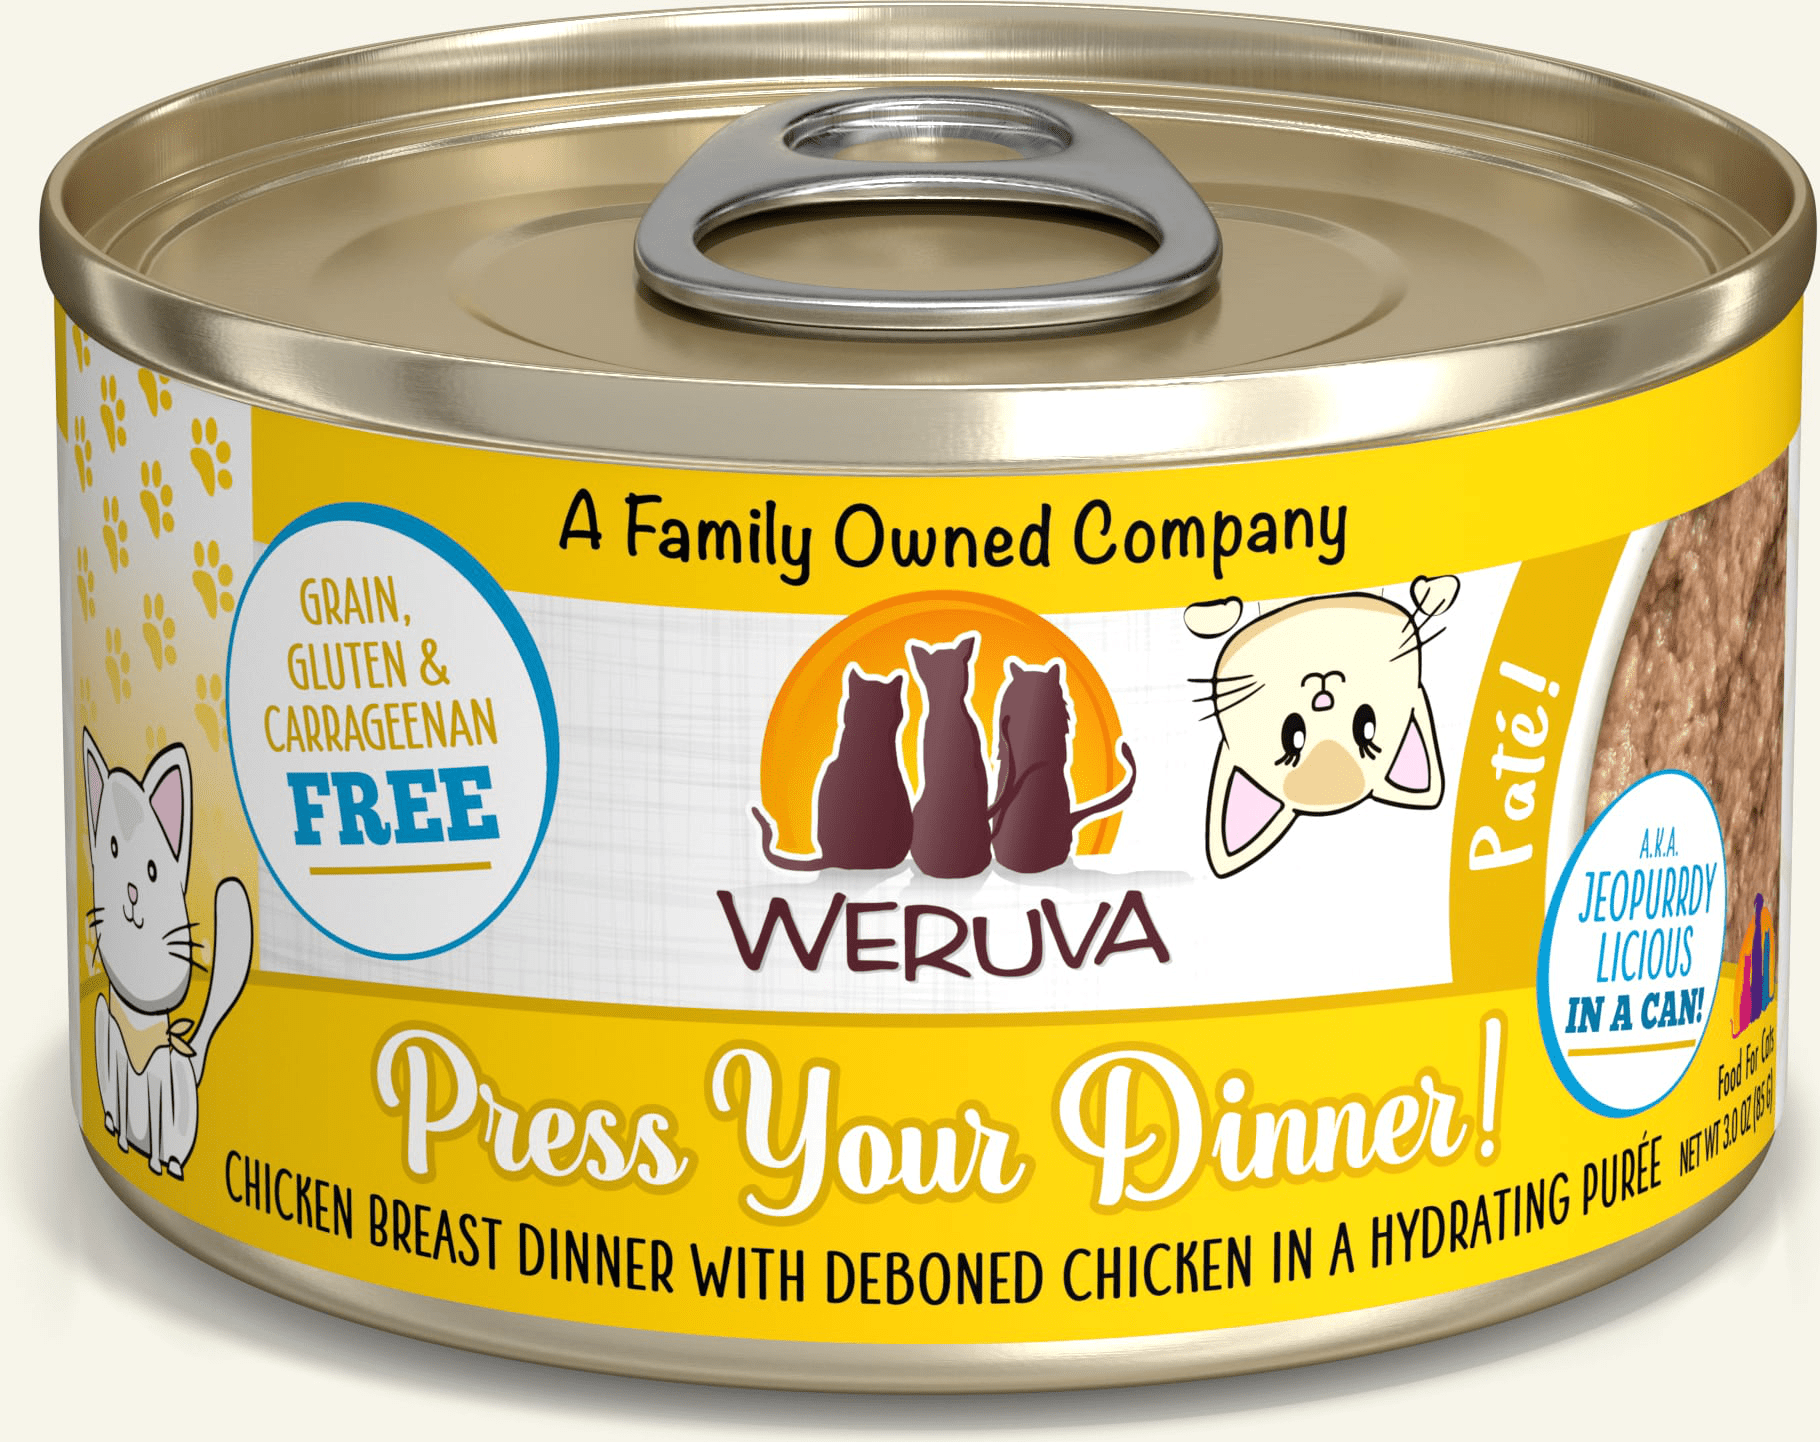 Weruva Press Your Dinner!